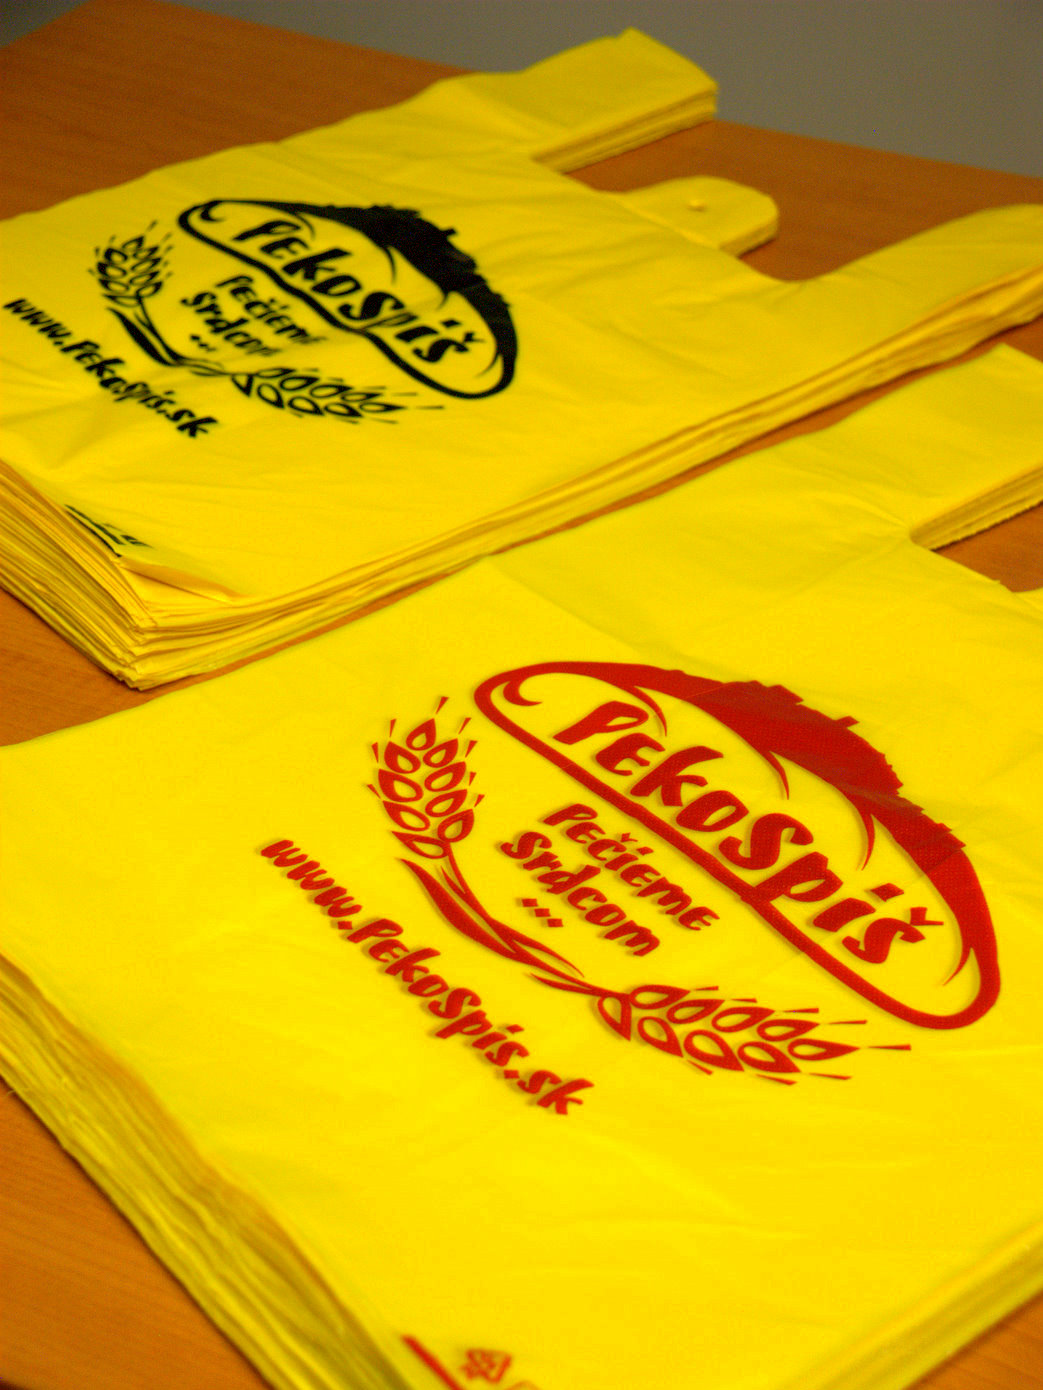 Žlté mikroténové tašky s rovnakou potlačou tlačené pol na pol rôznymi farbami